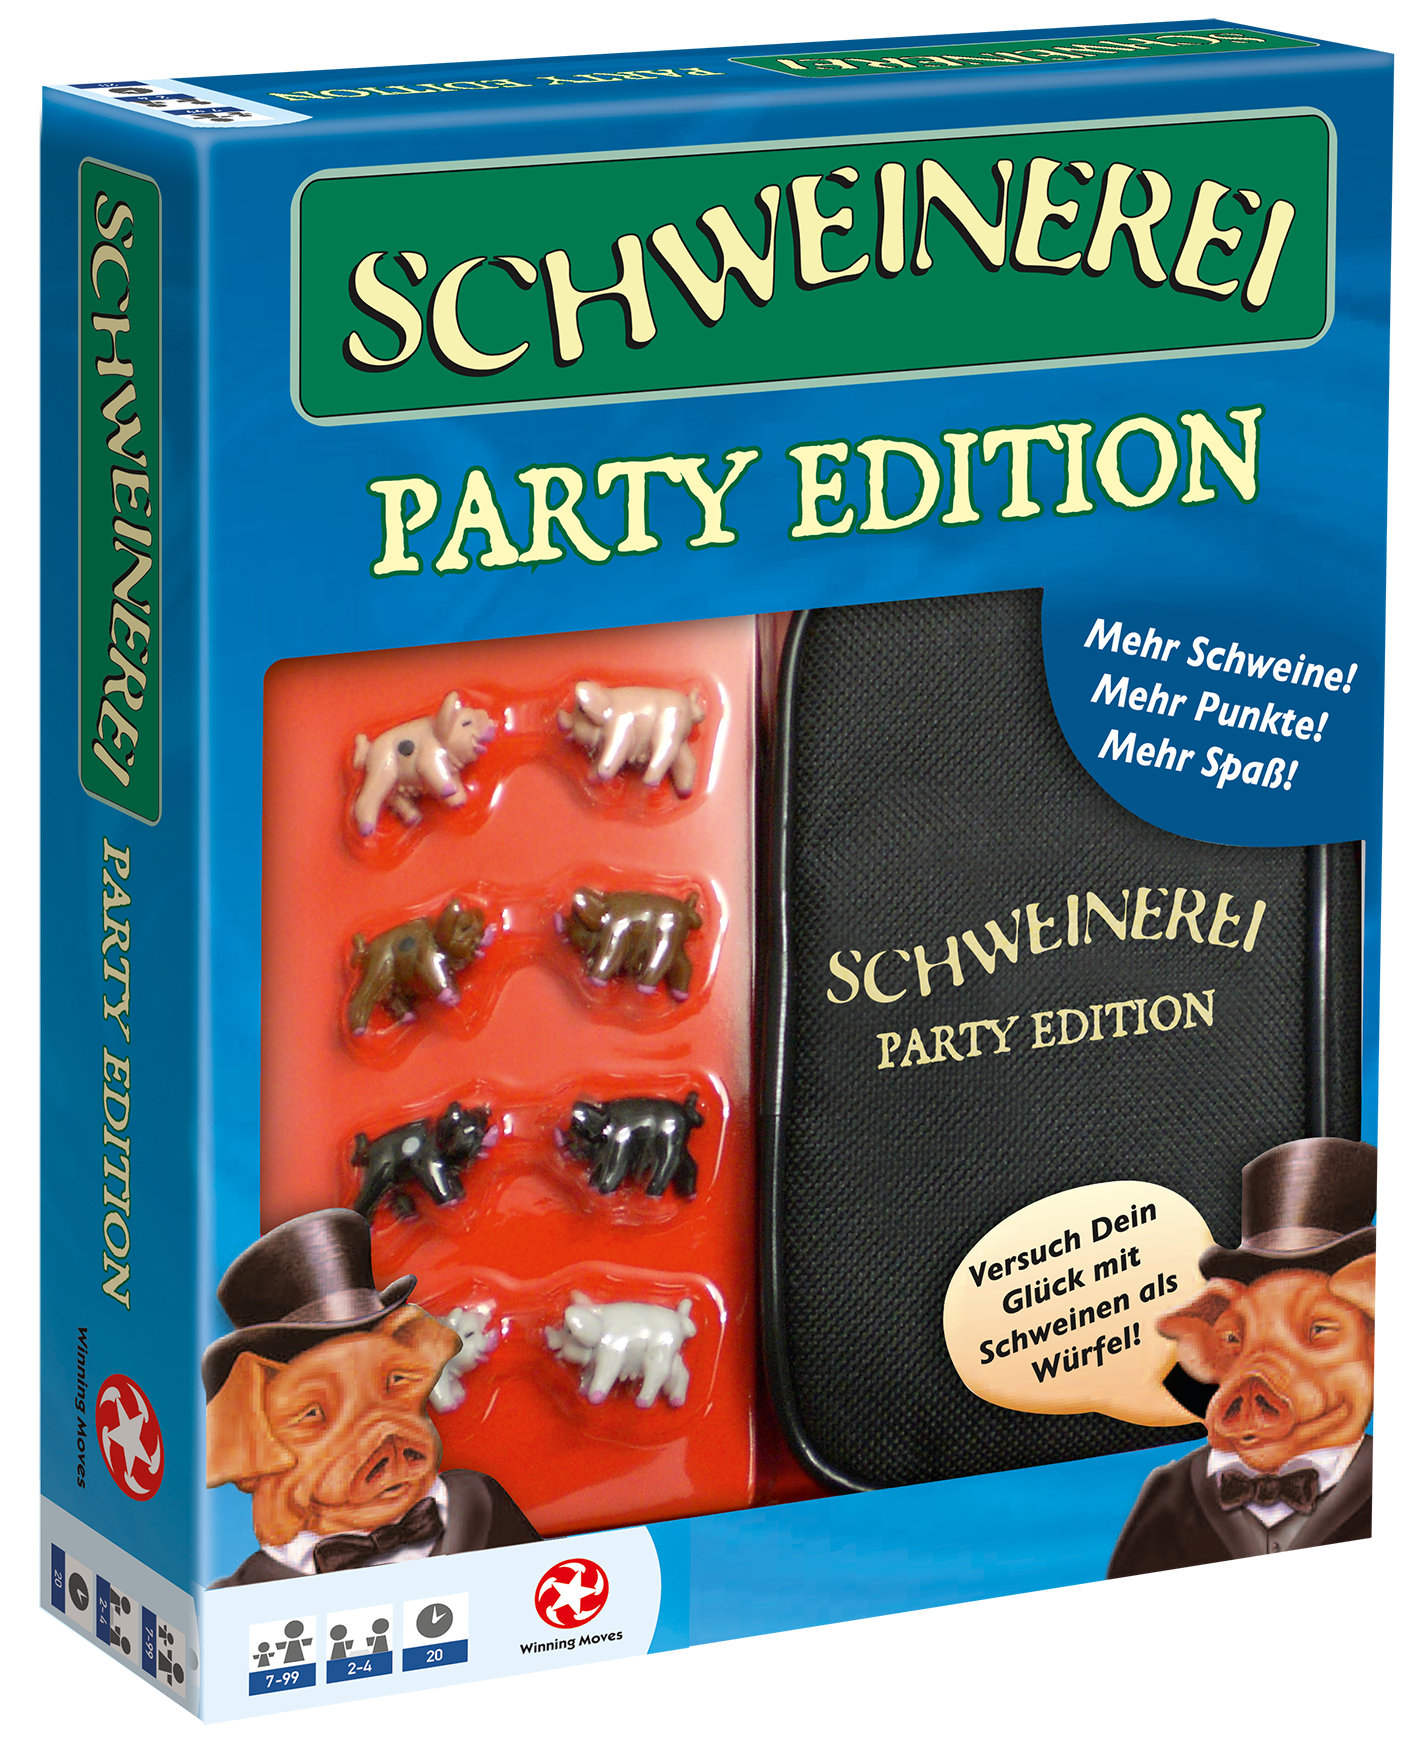 Schweinerei Party Edition